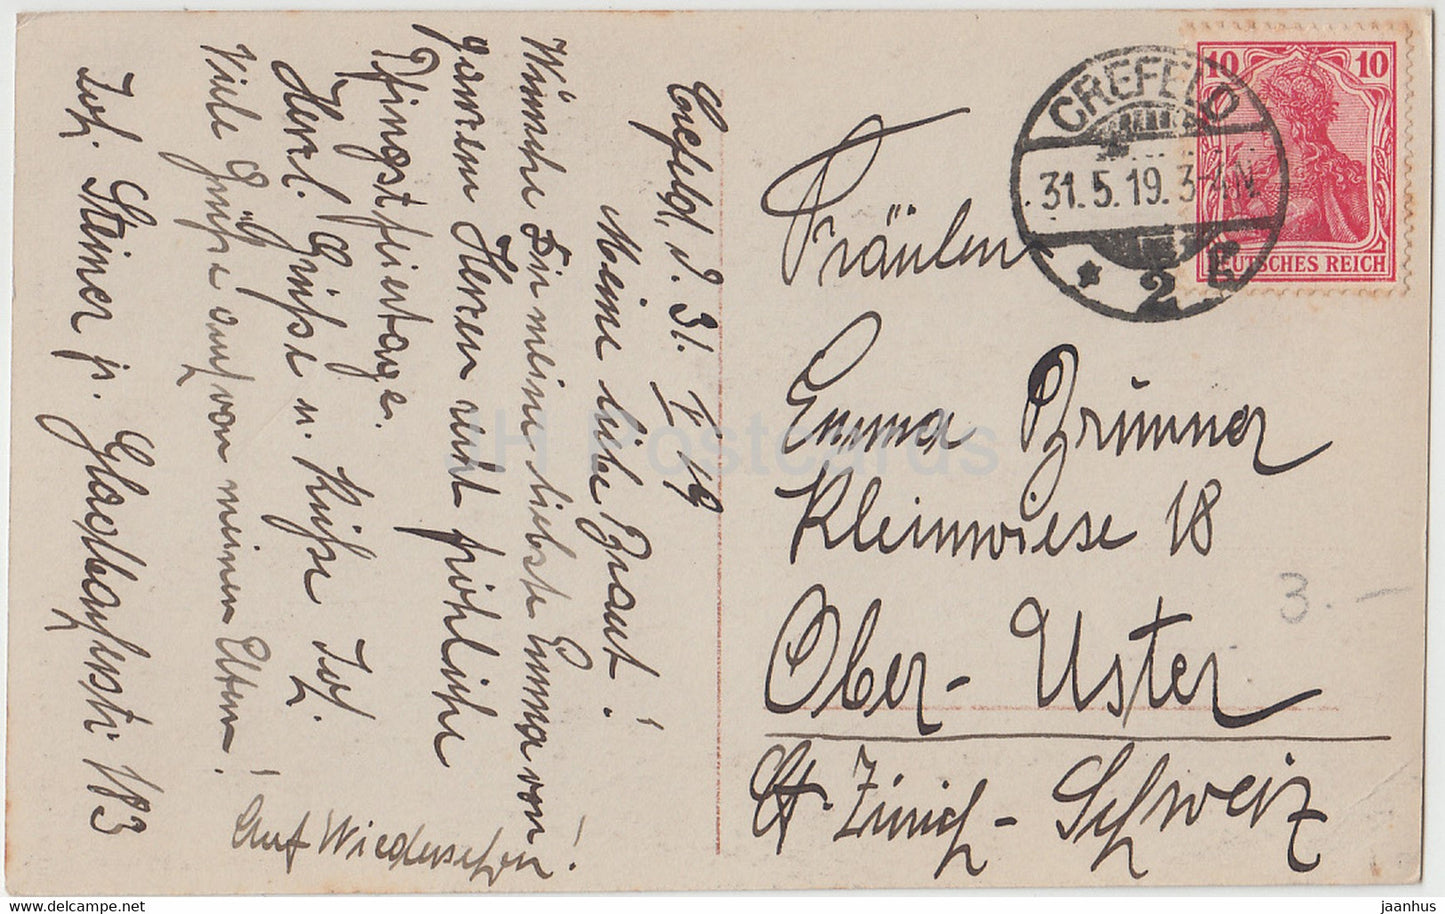 Pfingstgrußkarte - Innige Grusse zum Pfingstfest - HB 7483/1 - Junge - alte Postkarte - 1919 - Deutschland - gebraucht